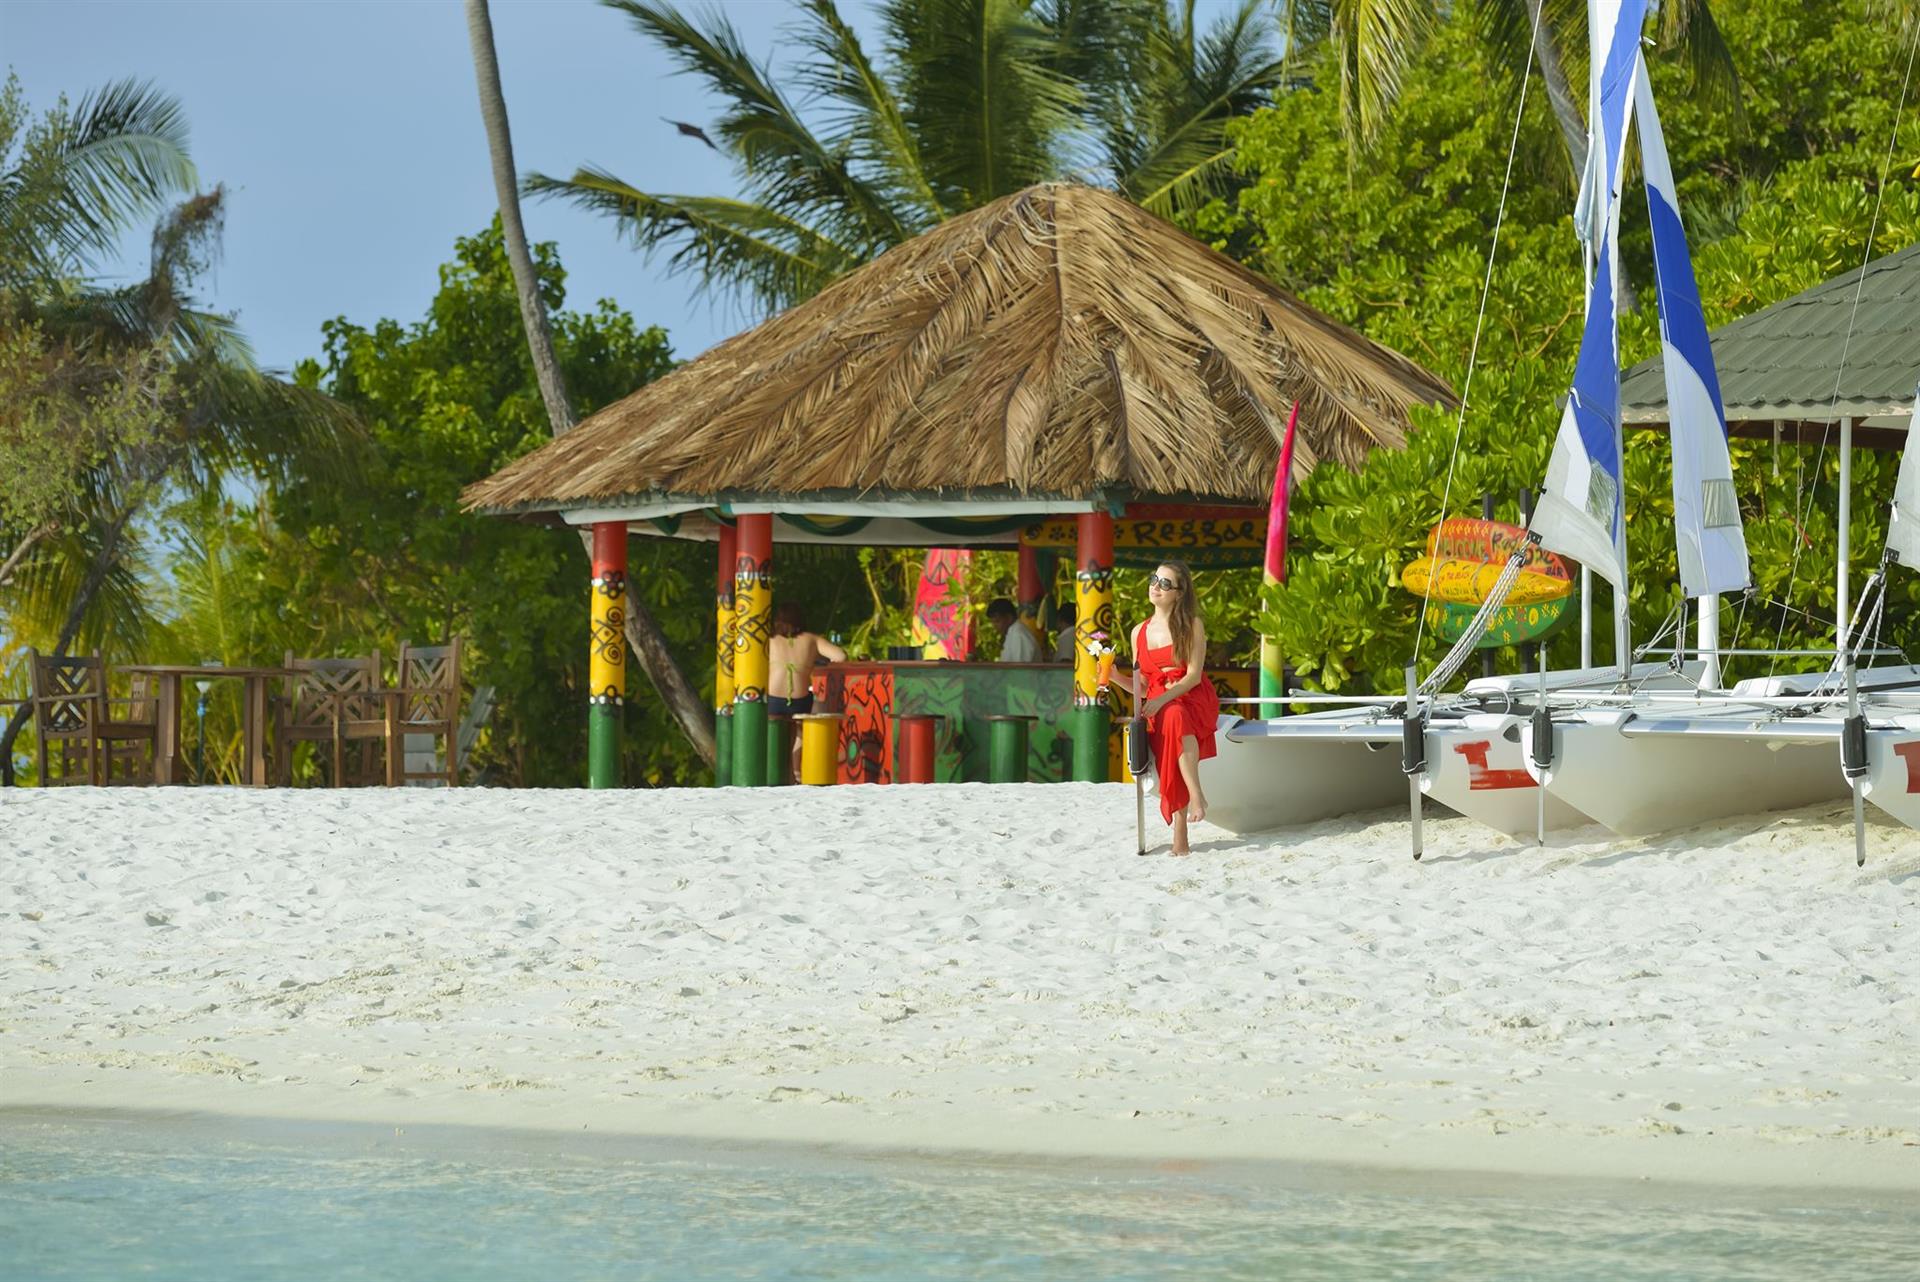 Мальдивы Холидей Исланд Резорт. Отель Holiday Island Resort and Spa 4*. Остров Диффуши. Диффуши Мальдивы. Maldives holidays